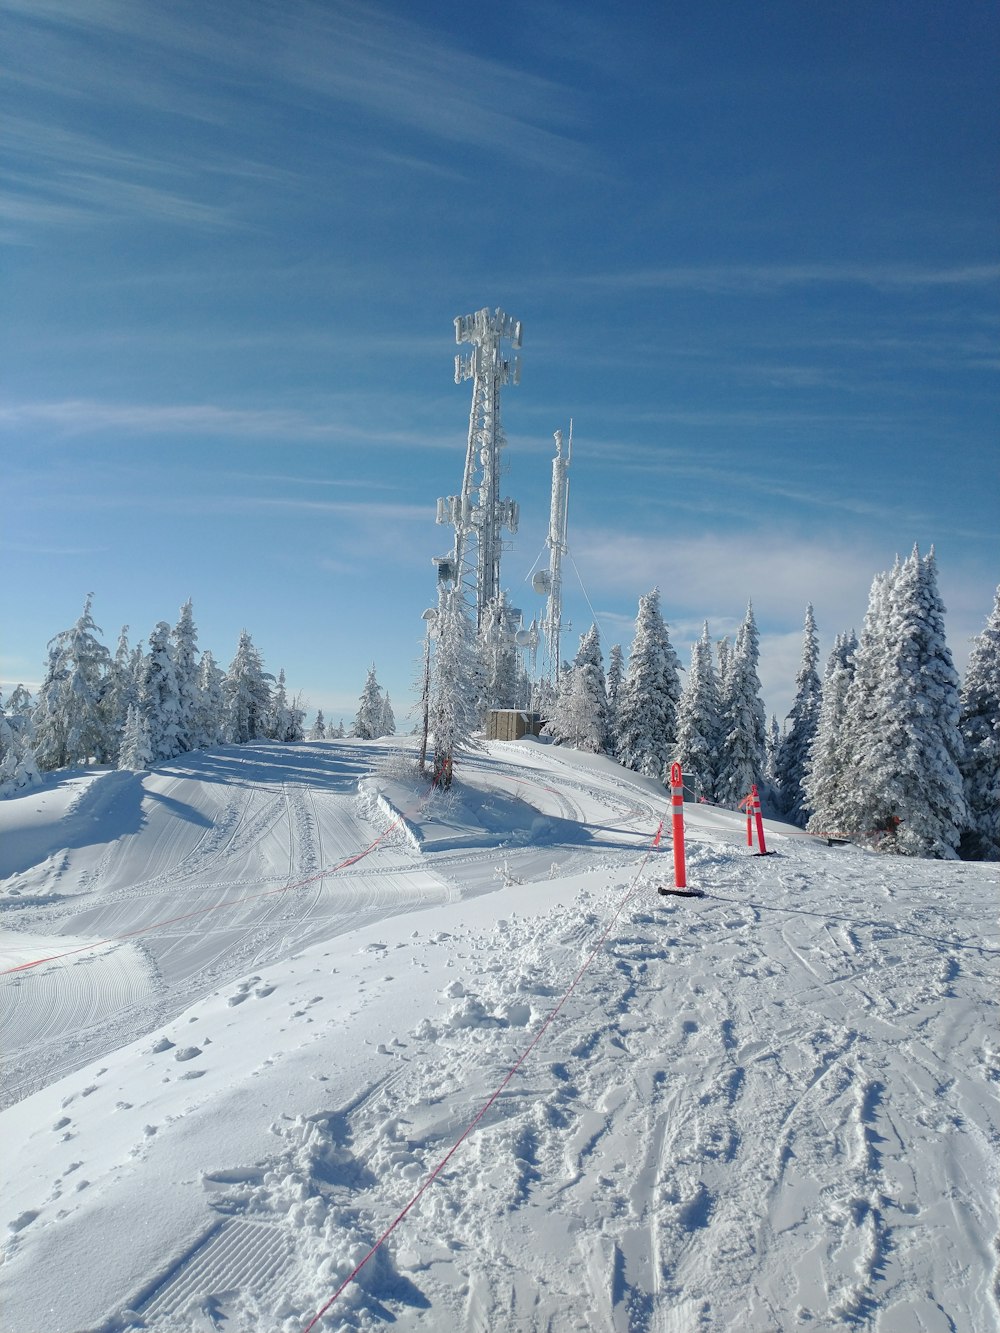 une personne qui skie sur une surface enneigée